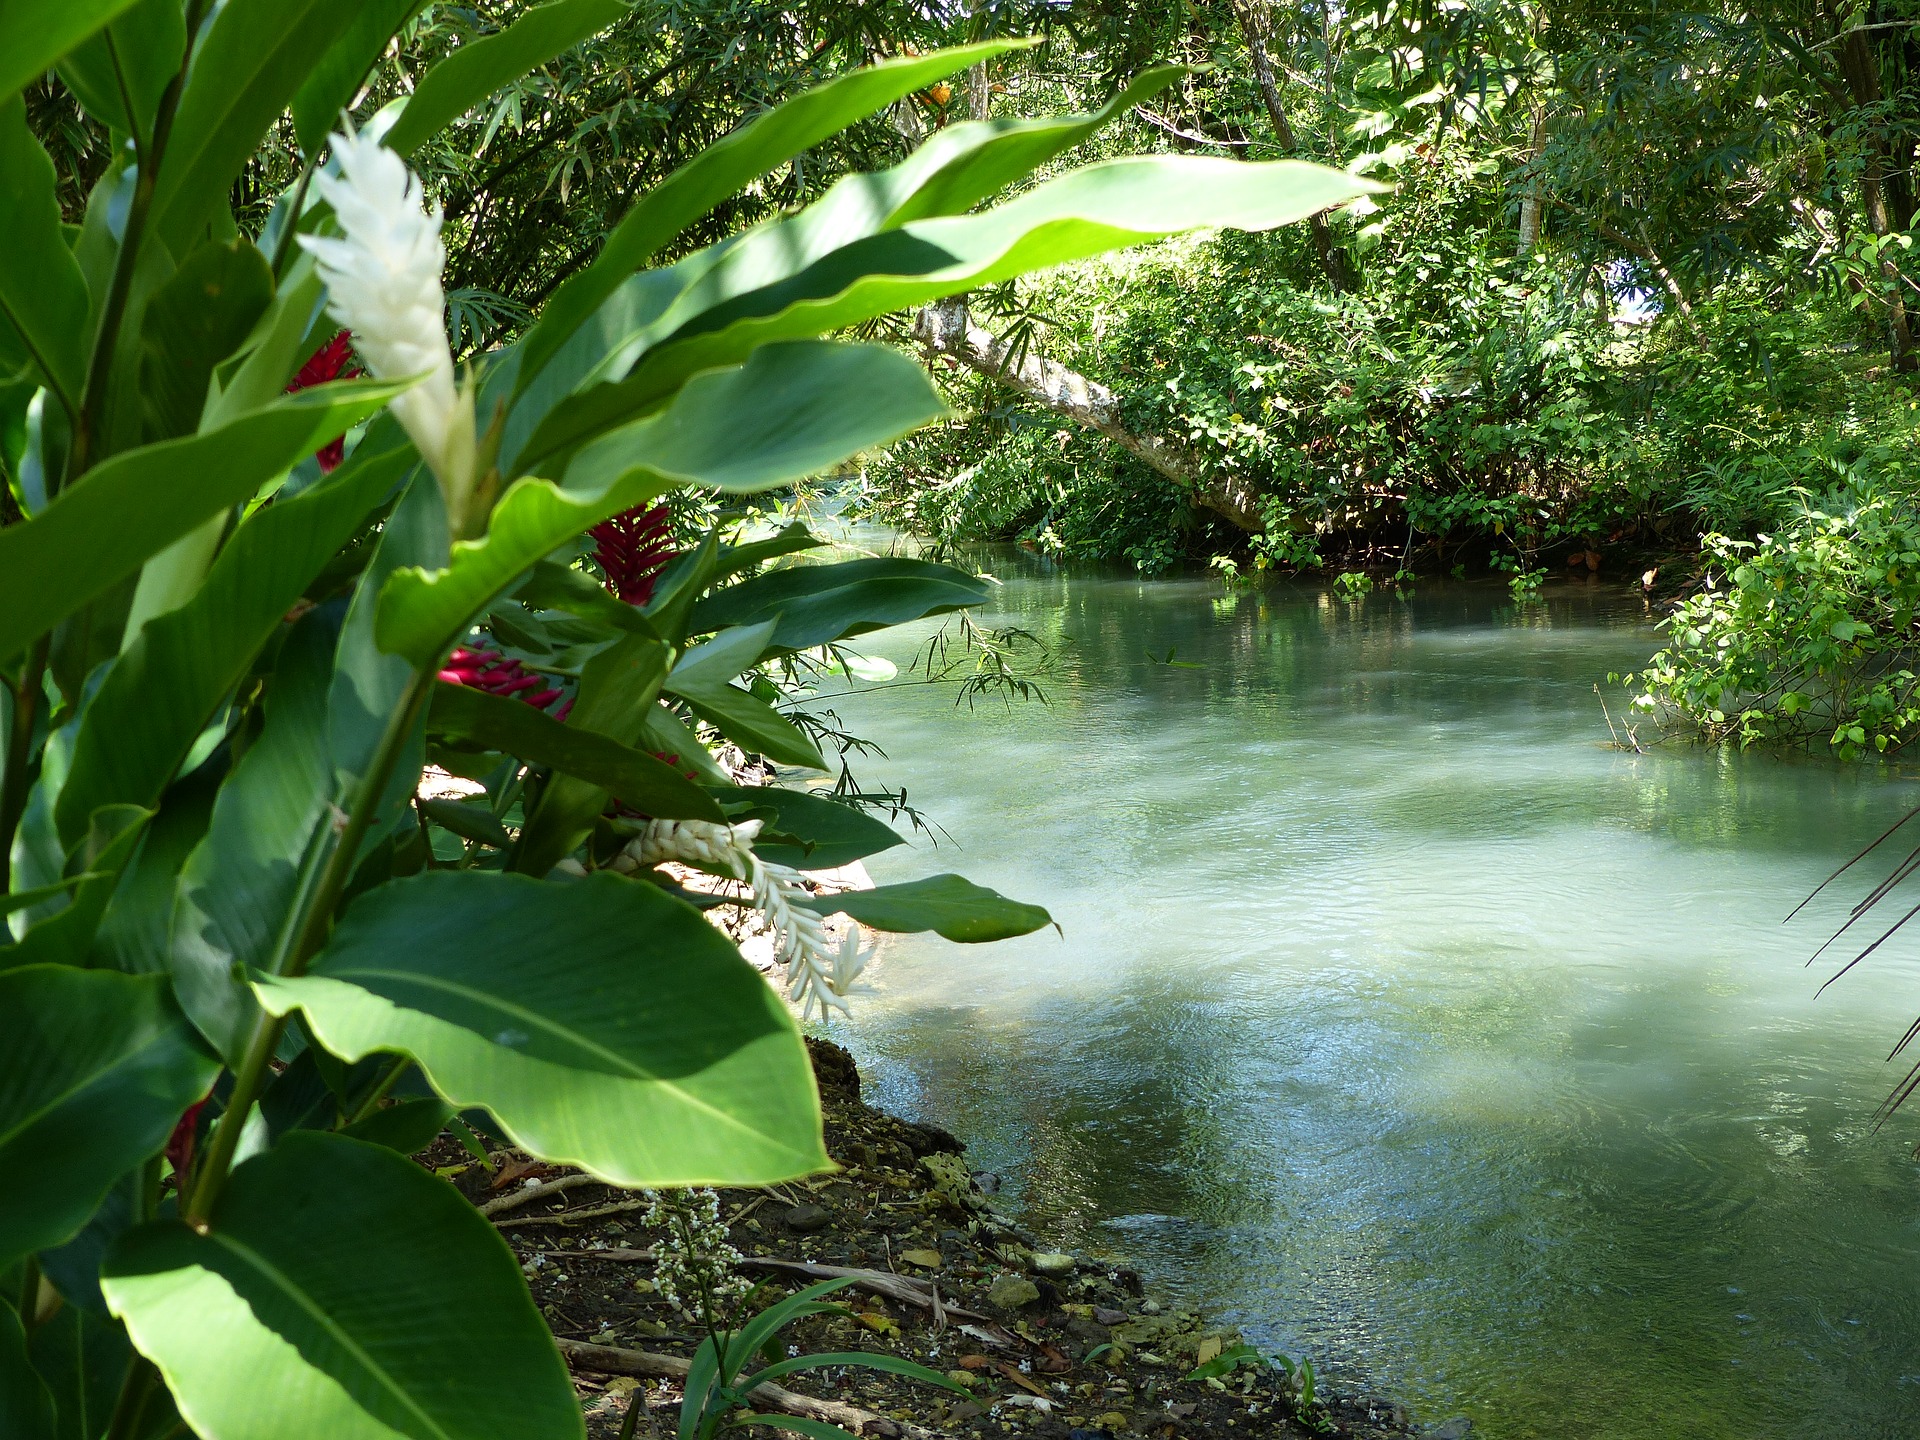 River in Port Antonio, Jamaica